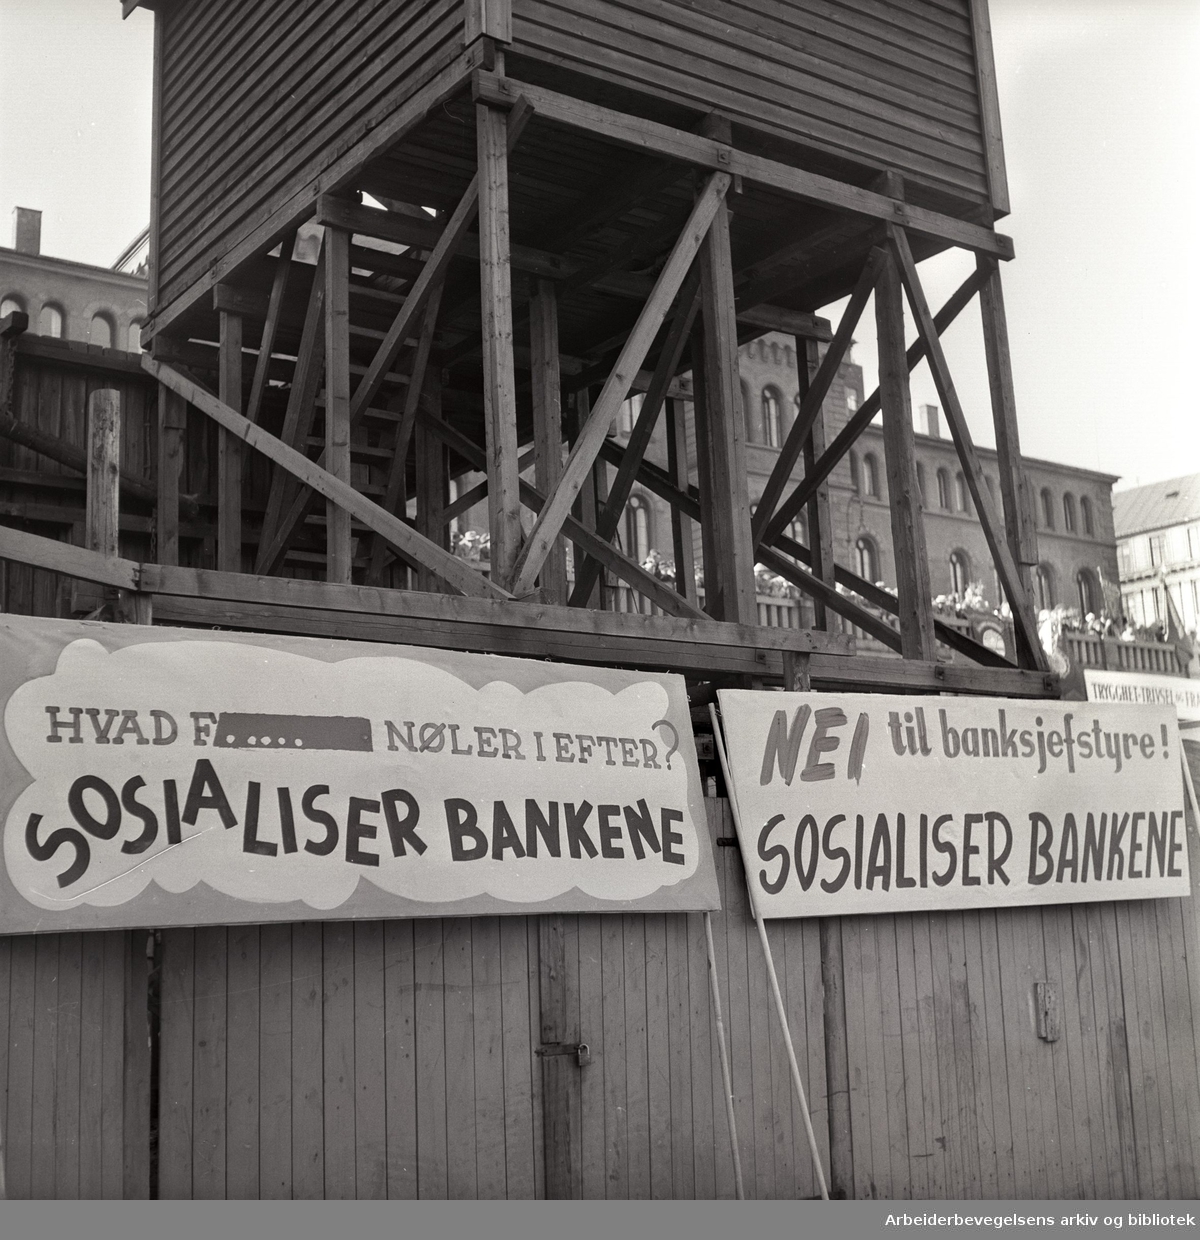 1. mai 1957, Youngstorget. Parole: Hvad f... nøler i efter? Sosialiser bankene. Parole: Nei til banksjef-styre! Sosialiser bankene.